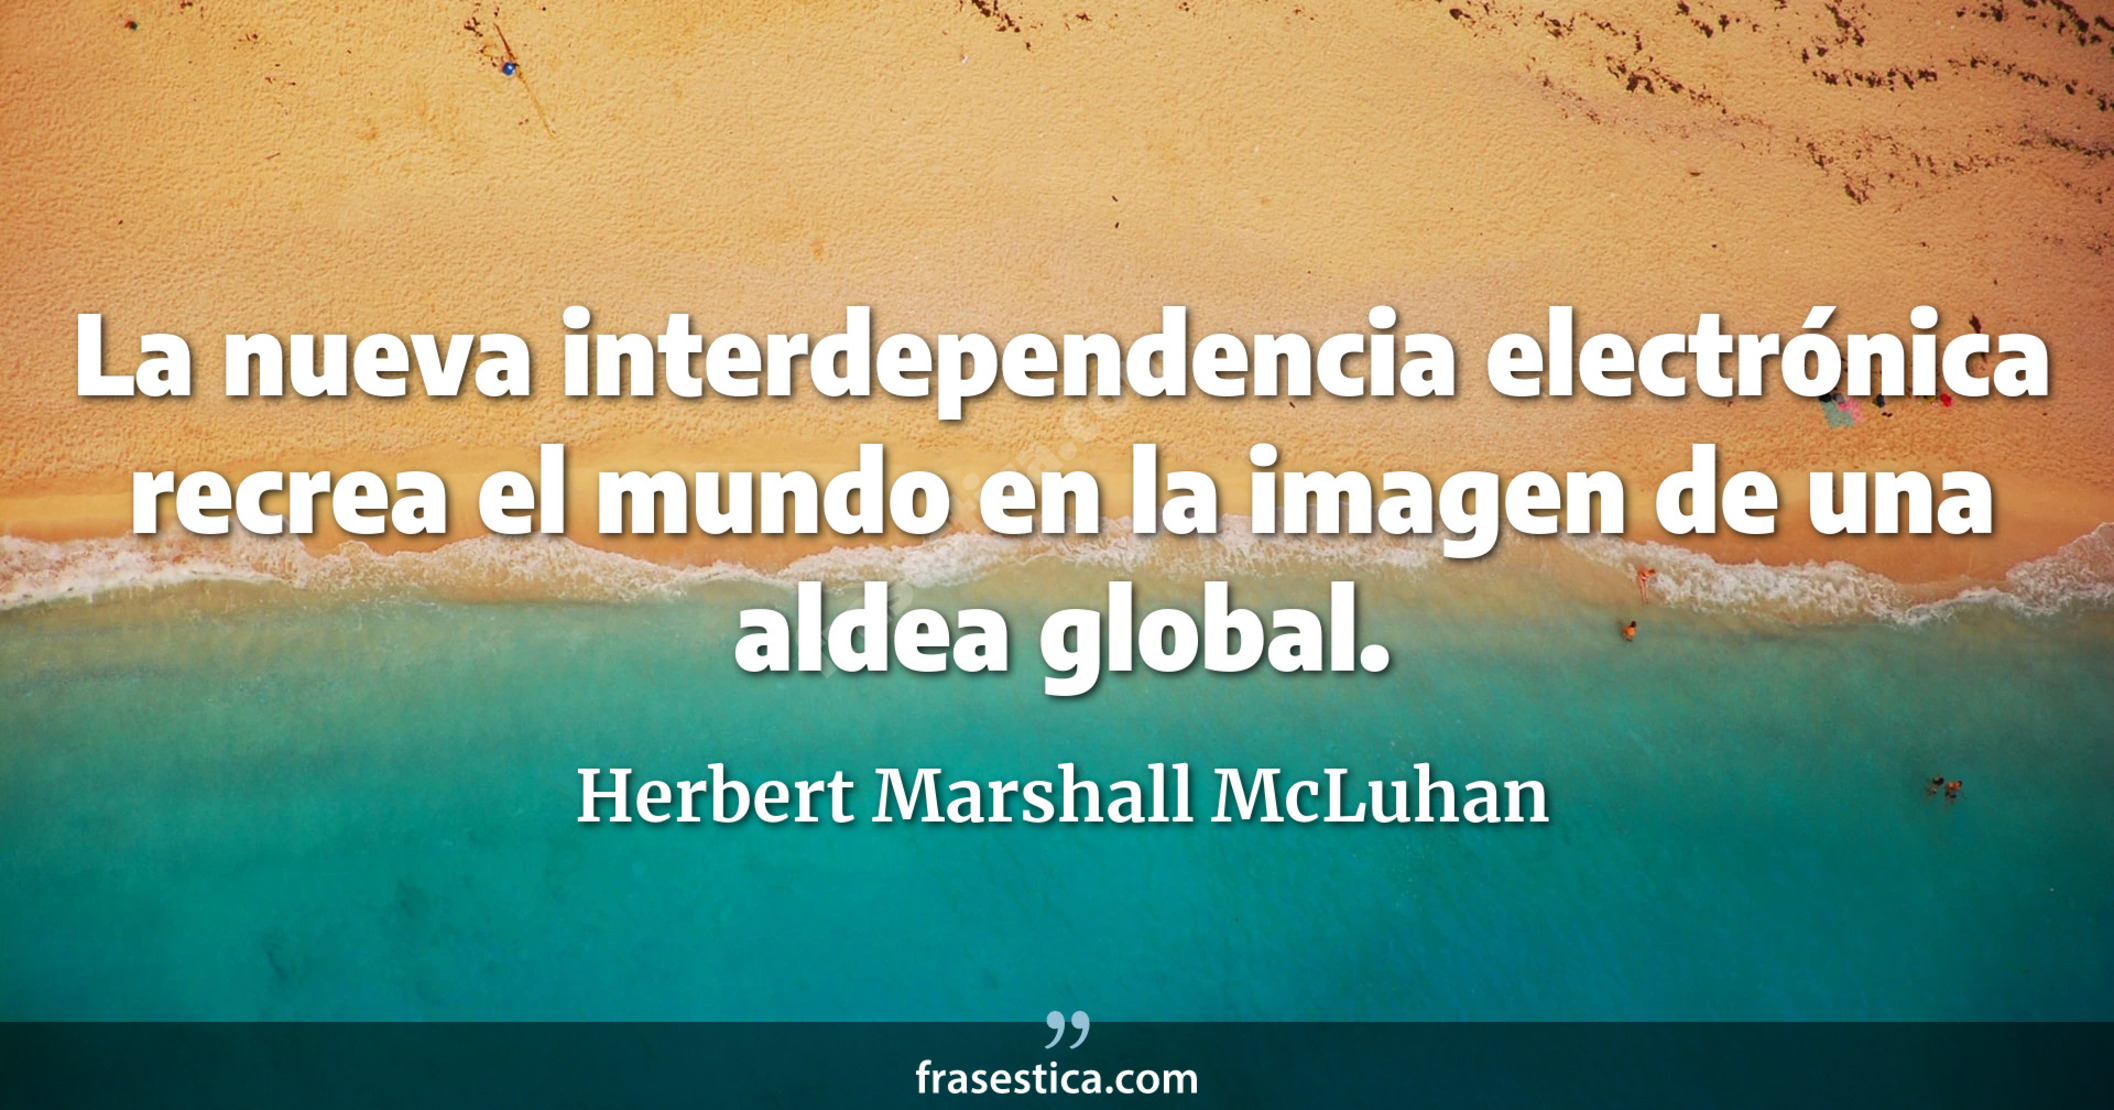 La nueva interdependencia electrónica recrea el mundo en la imagen de una aldea global. - Herbert Marshall McLuhan